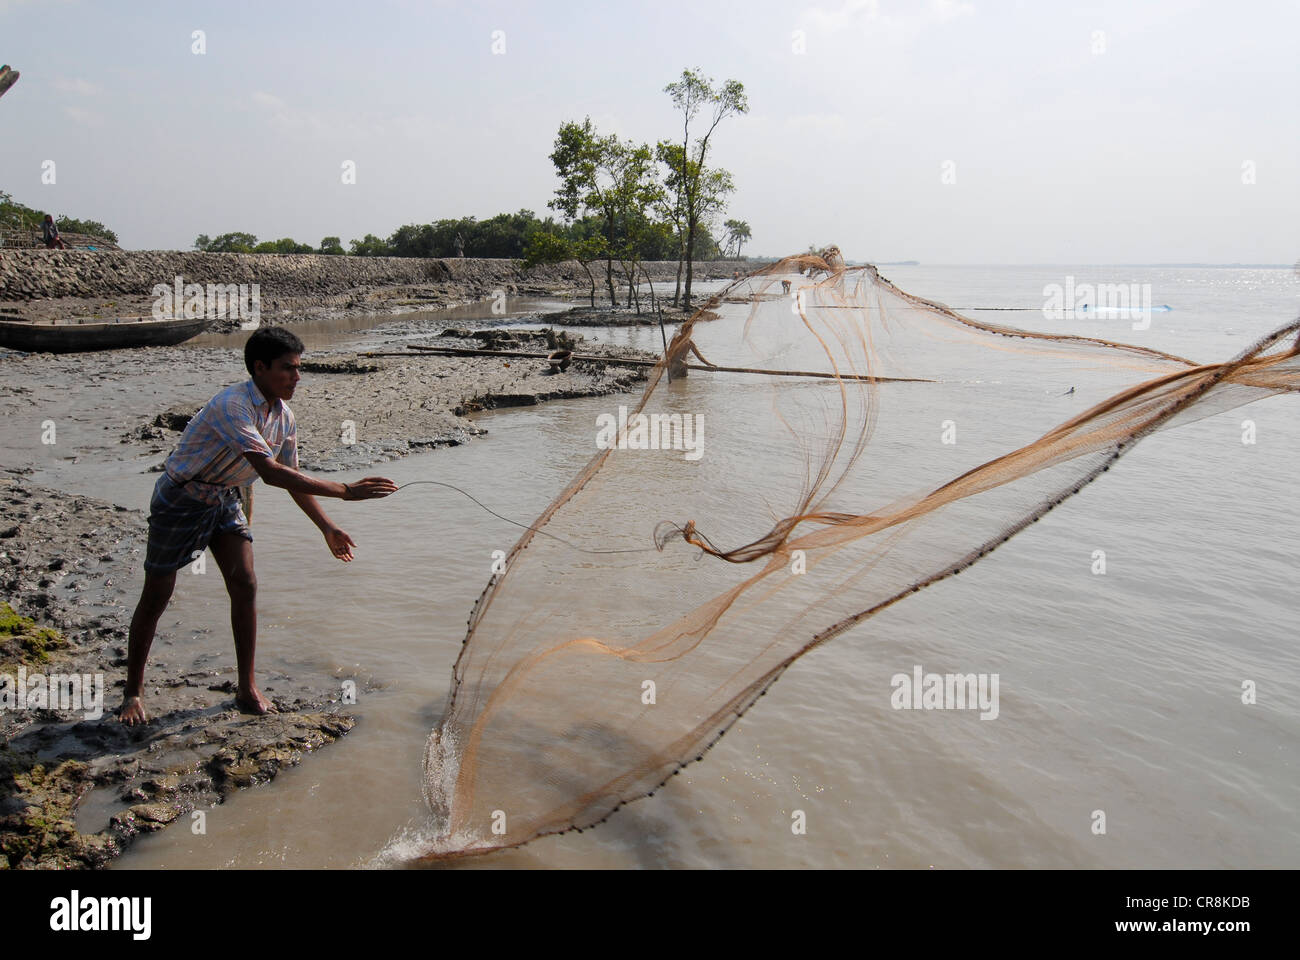 Bangladesh , villaggio Kalabogi presso il river Shibsha vicino alla baia del Bengala, i popoli sono i più colpiti dai cambiamenti climatici, pescatore getta la rete Foto Stock